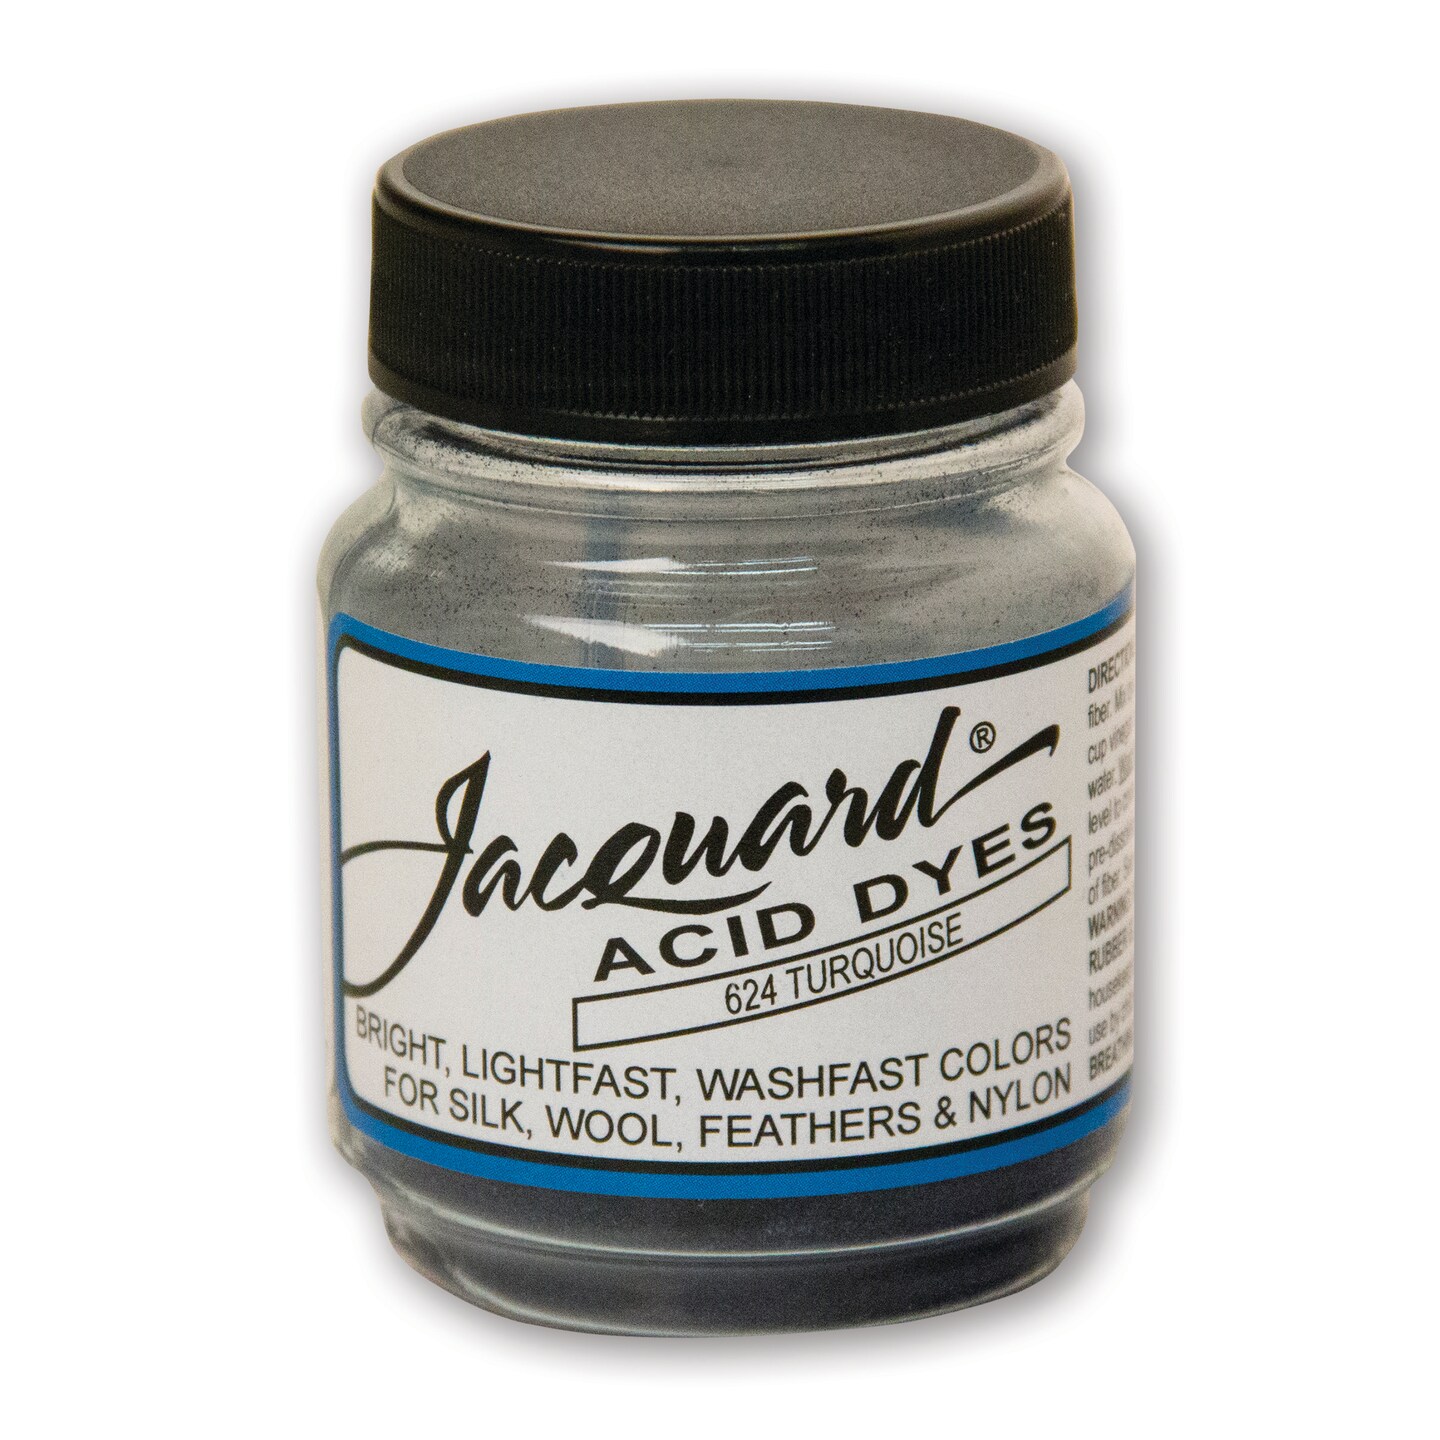 Jacquard Acid Dye, 1/2 oz., Turquoise